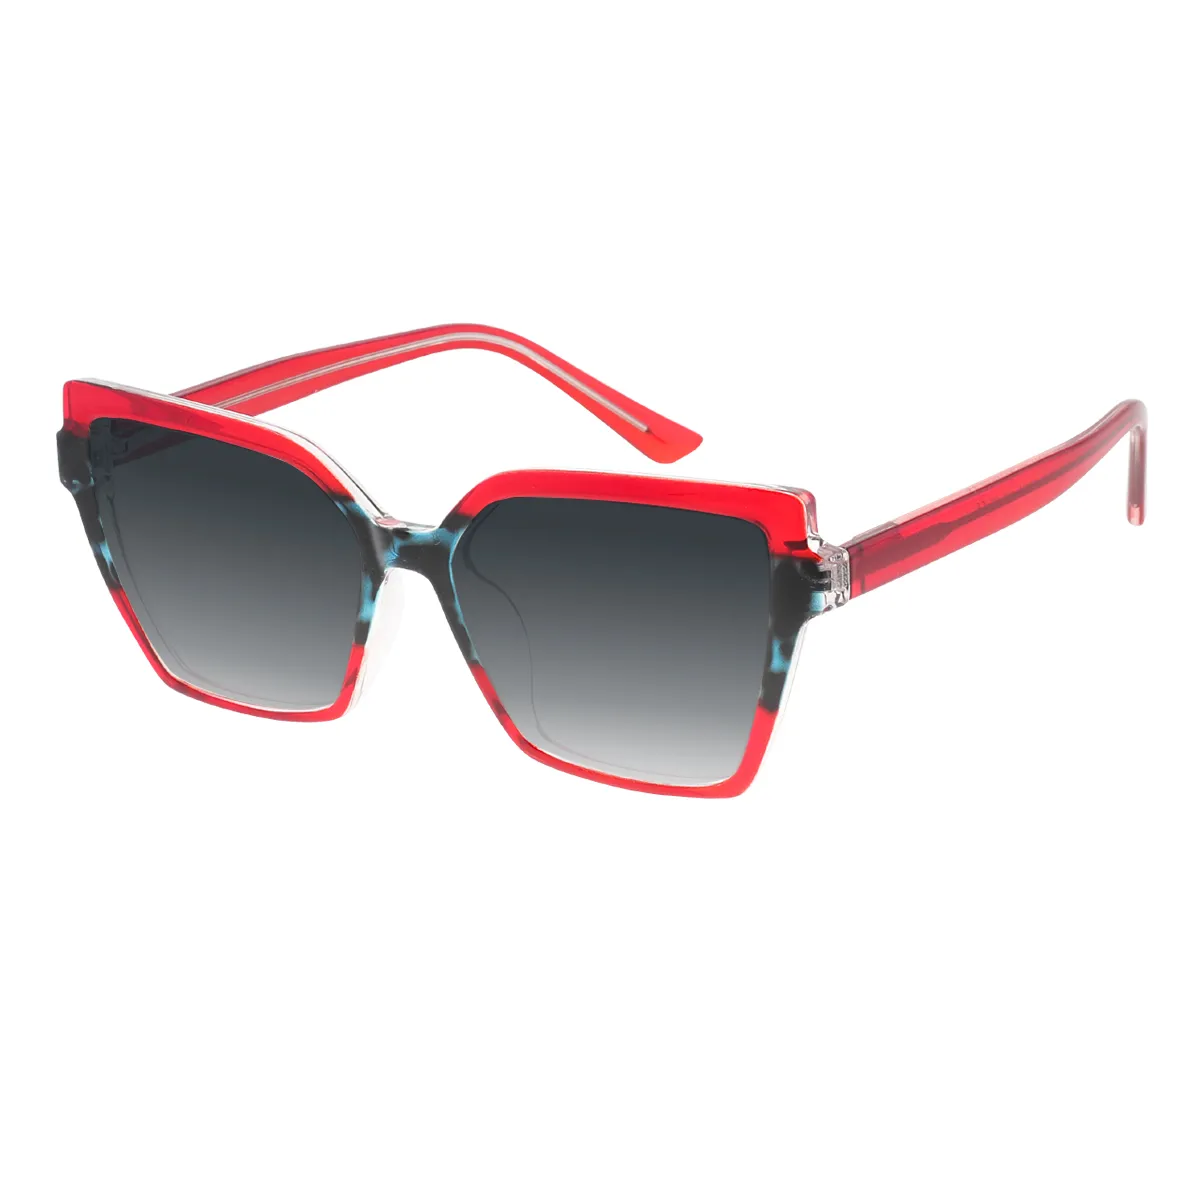 Vesta - Square Red Sunglasses for Women